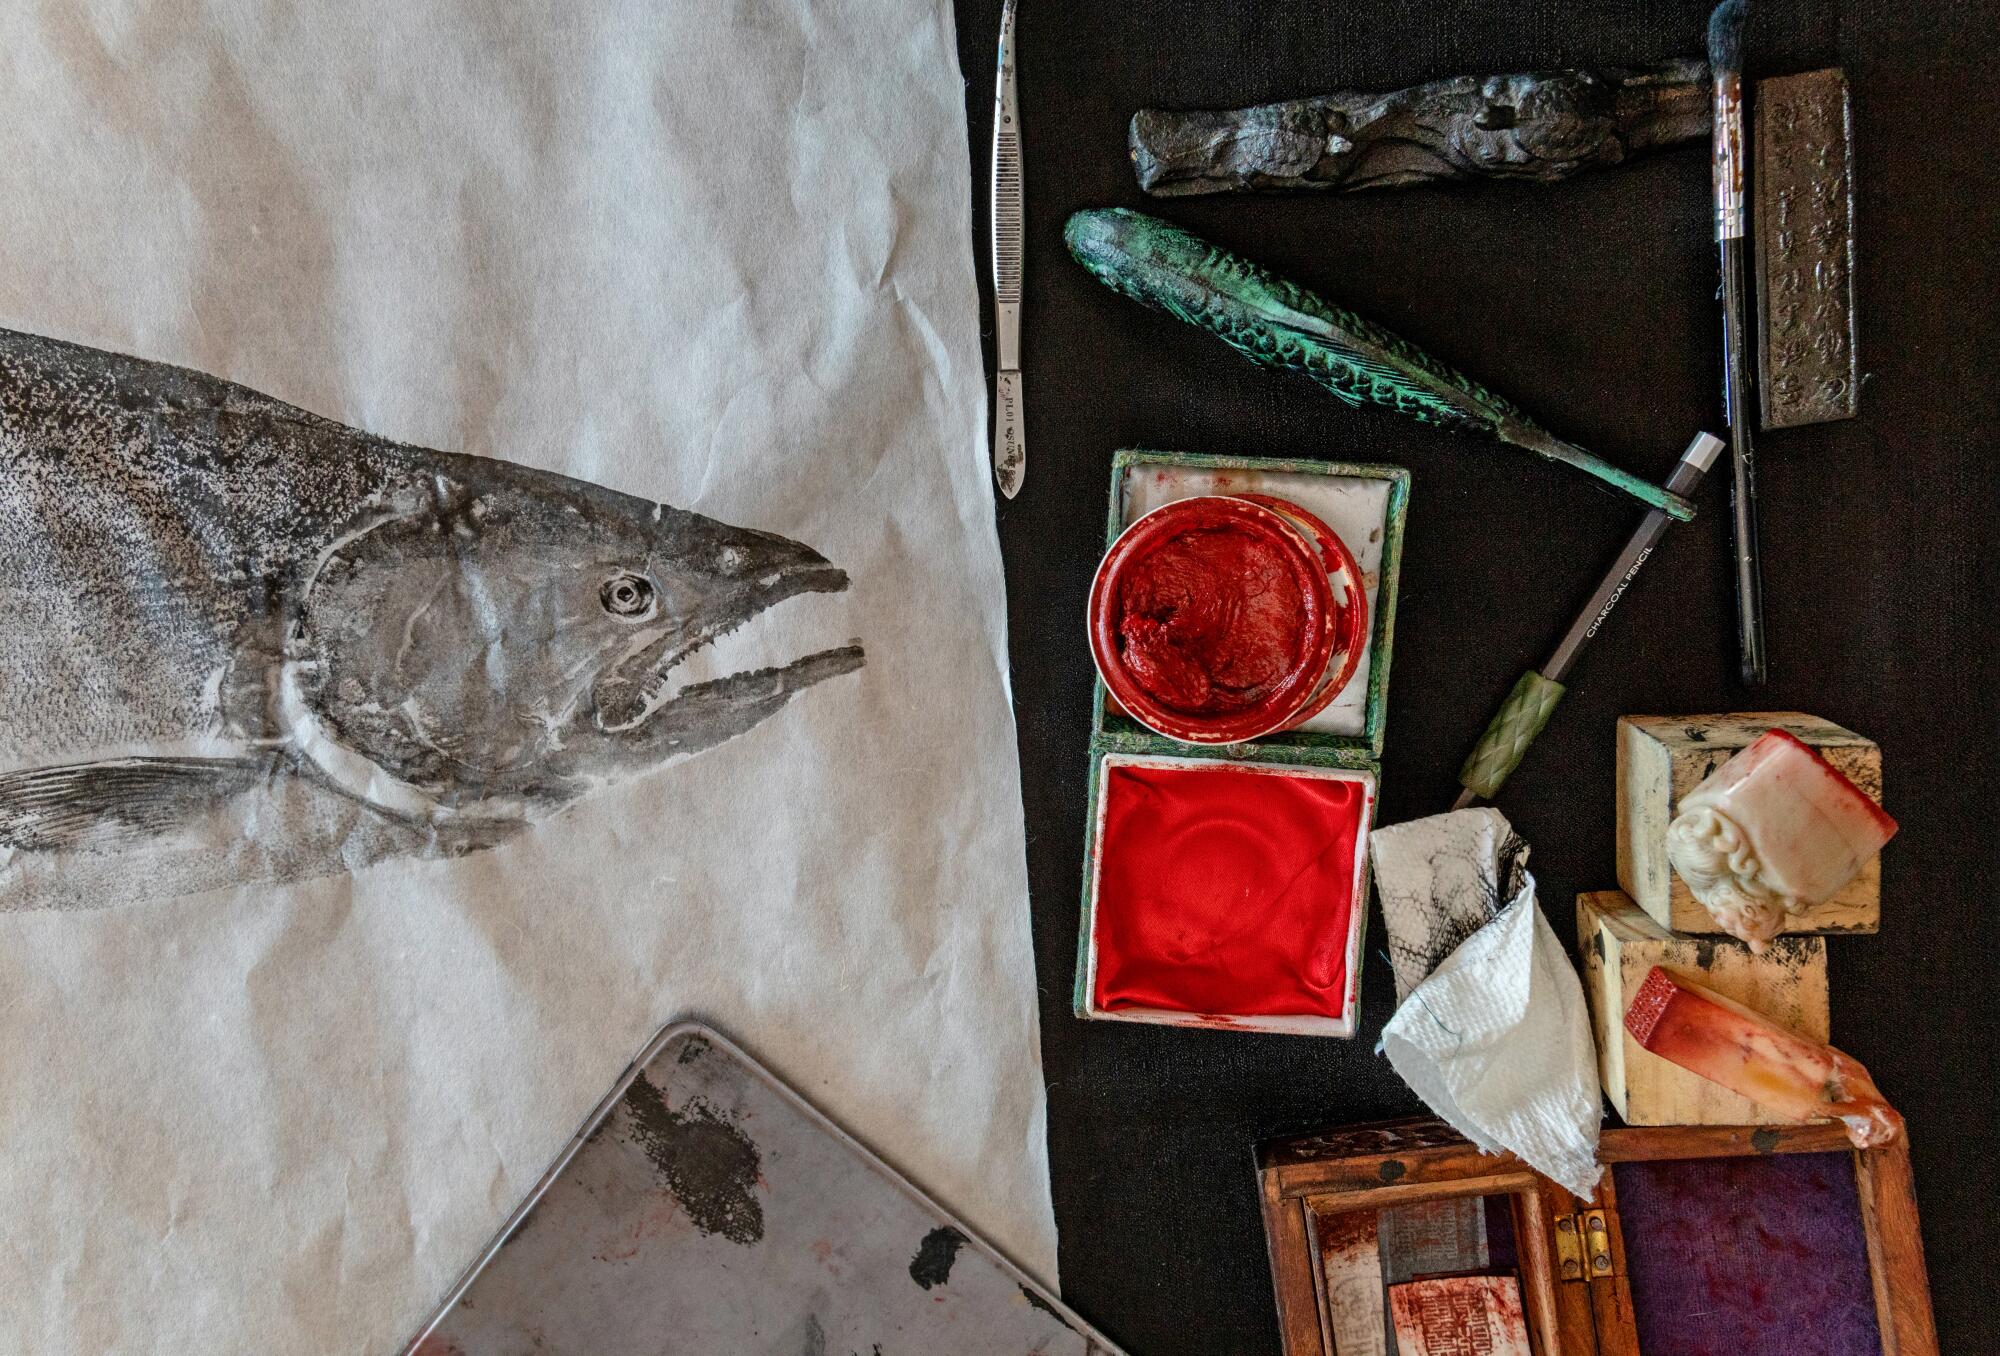 Detail of Dwight Hwang's working table as he's making a Spanish mackerel guotaku.